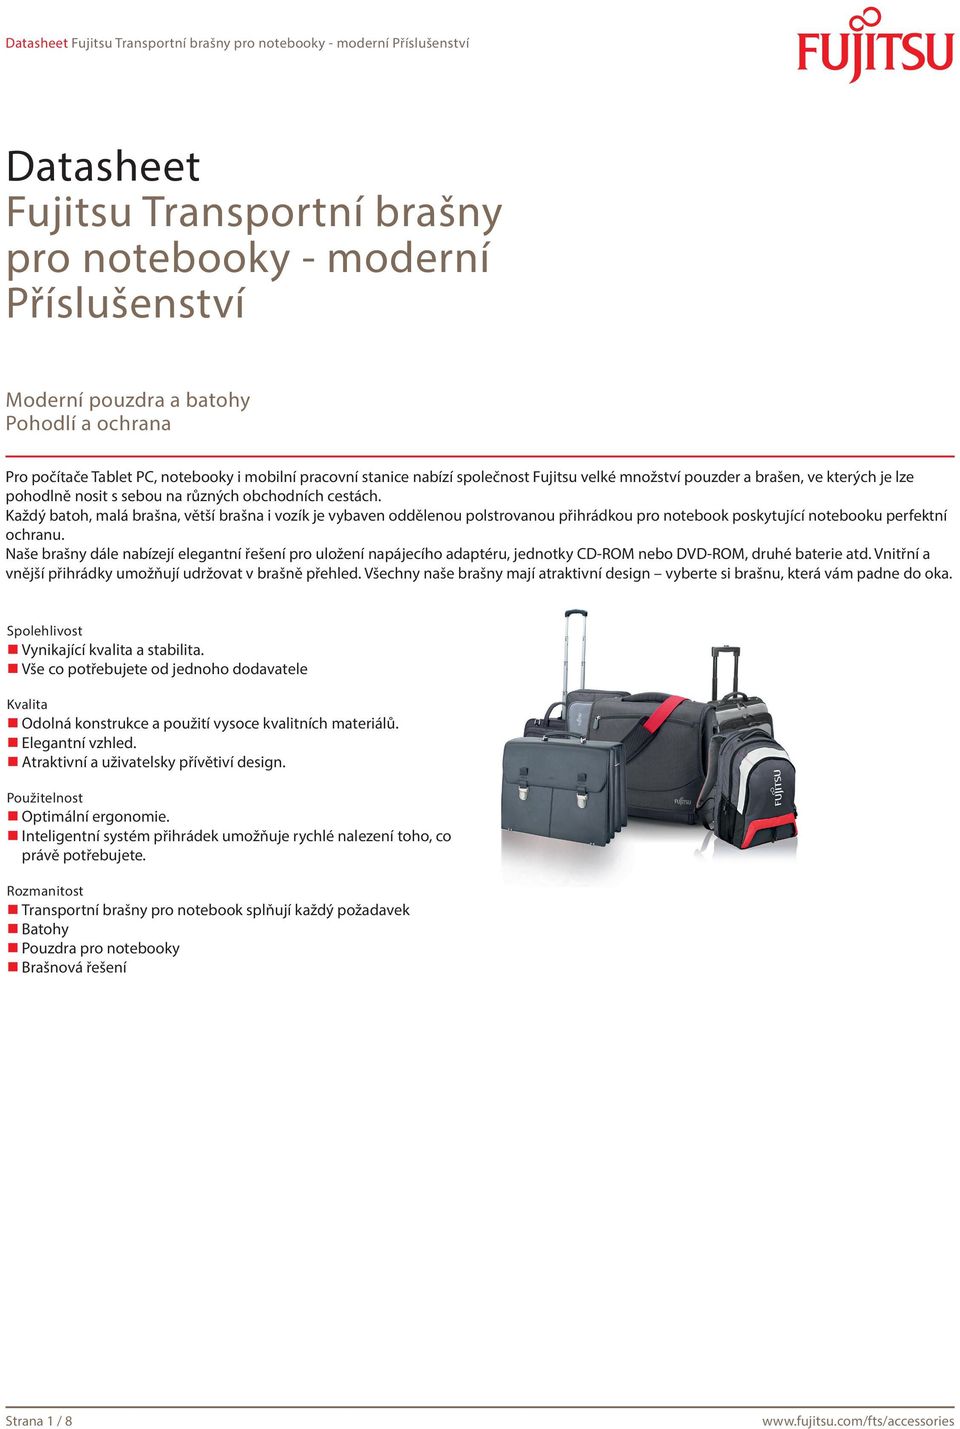 Každý batoh, malá brašna, větší brašna i vozík je vybaven oddělenou polstrovanou přihrádkou pro notebook poskytující notebooku perfektní ochranu.